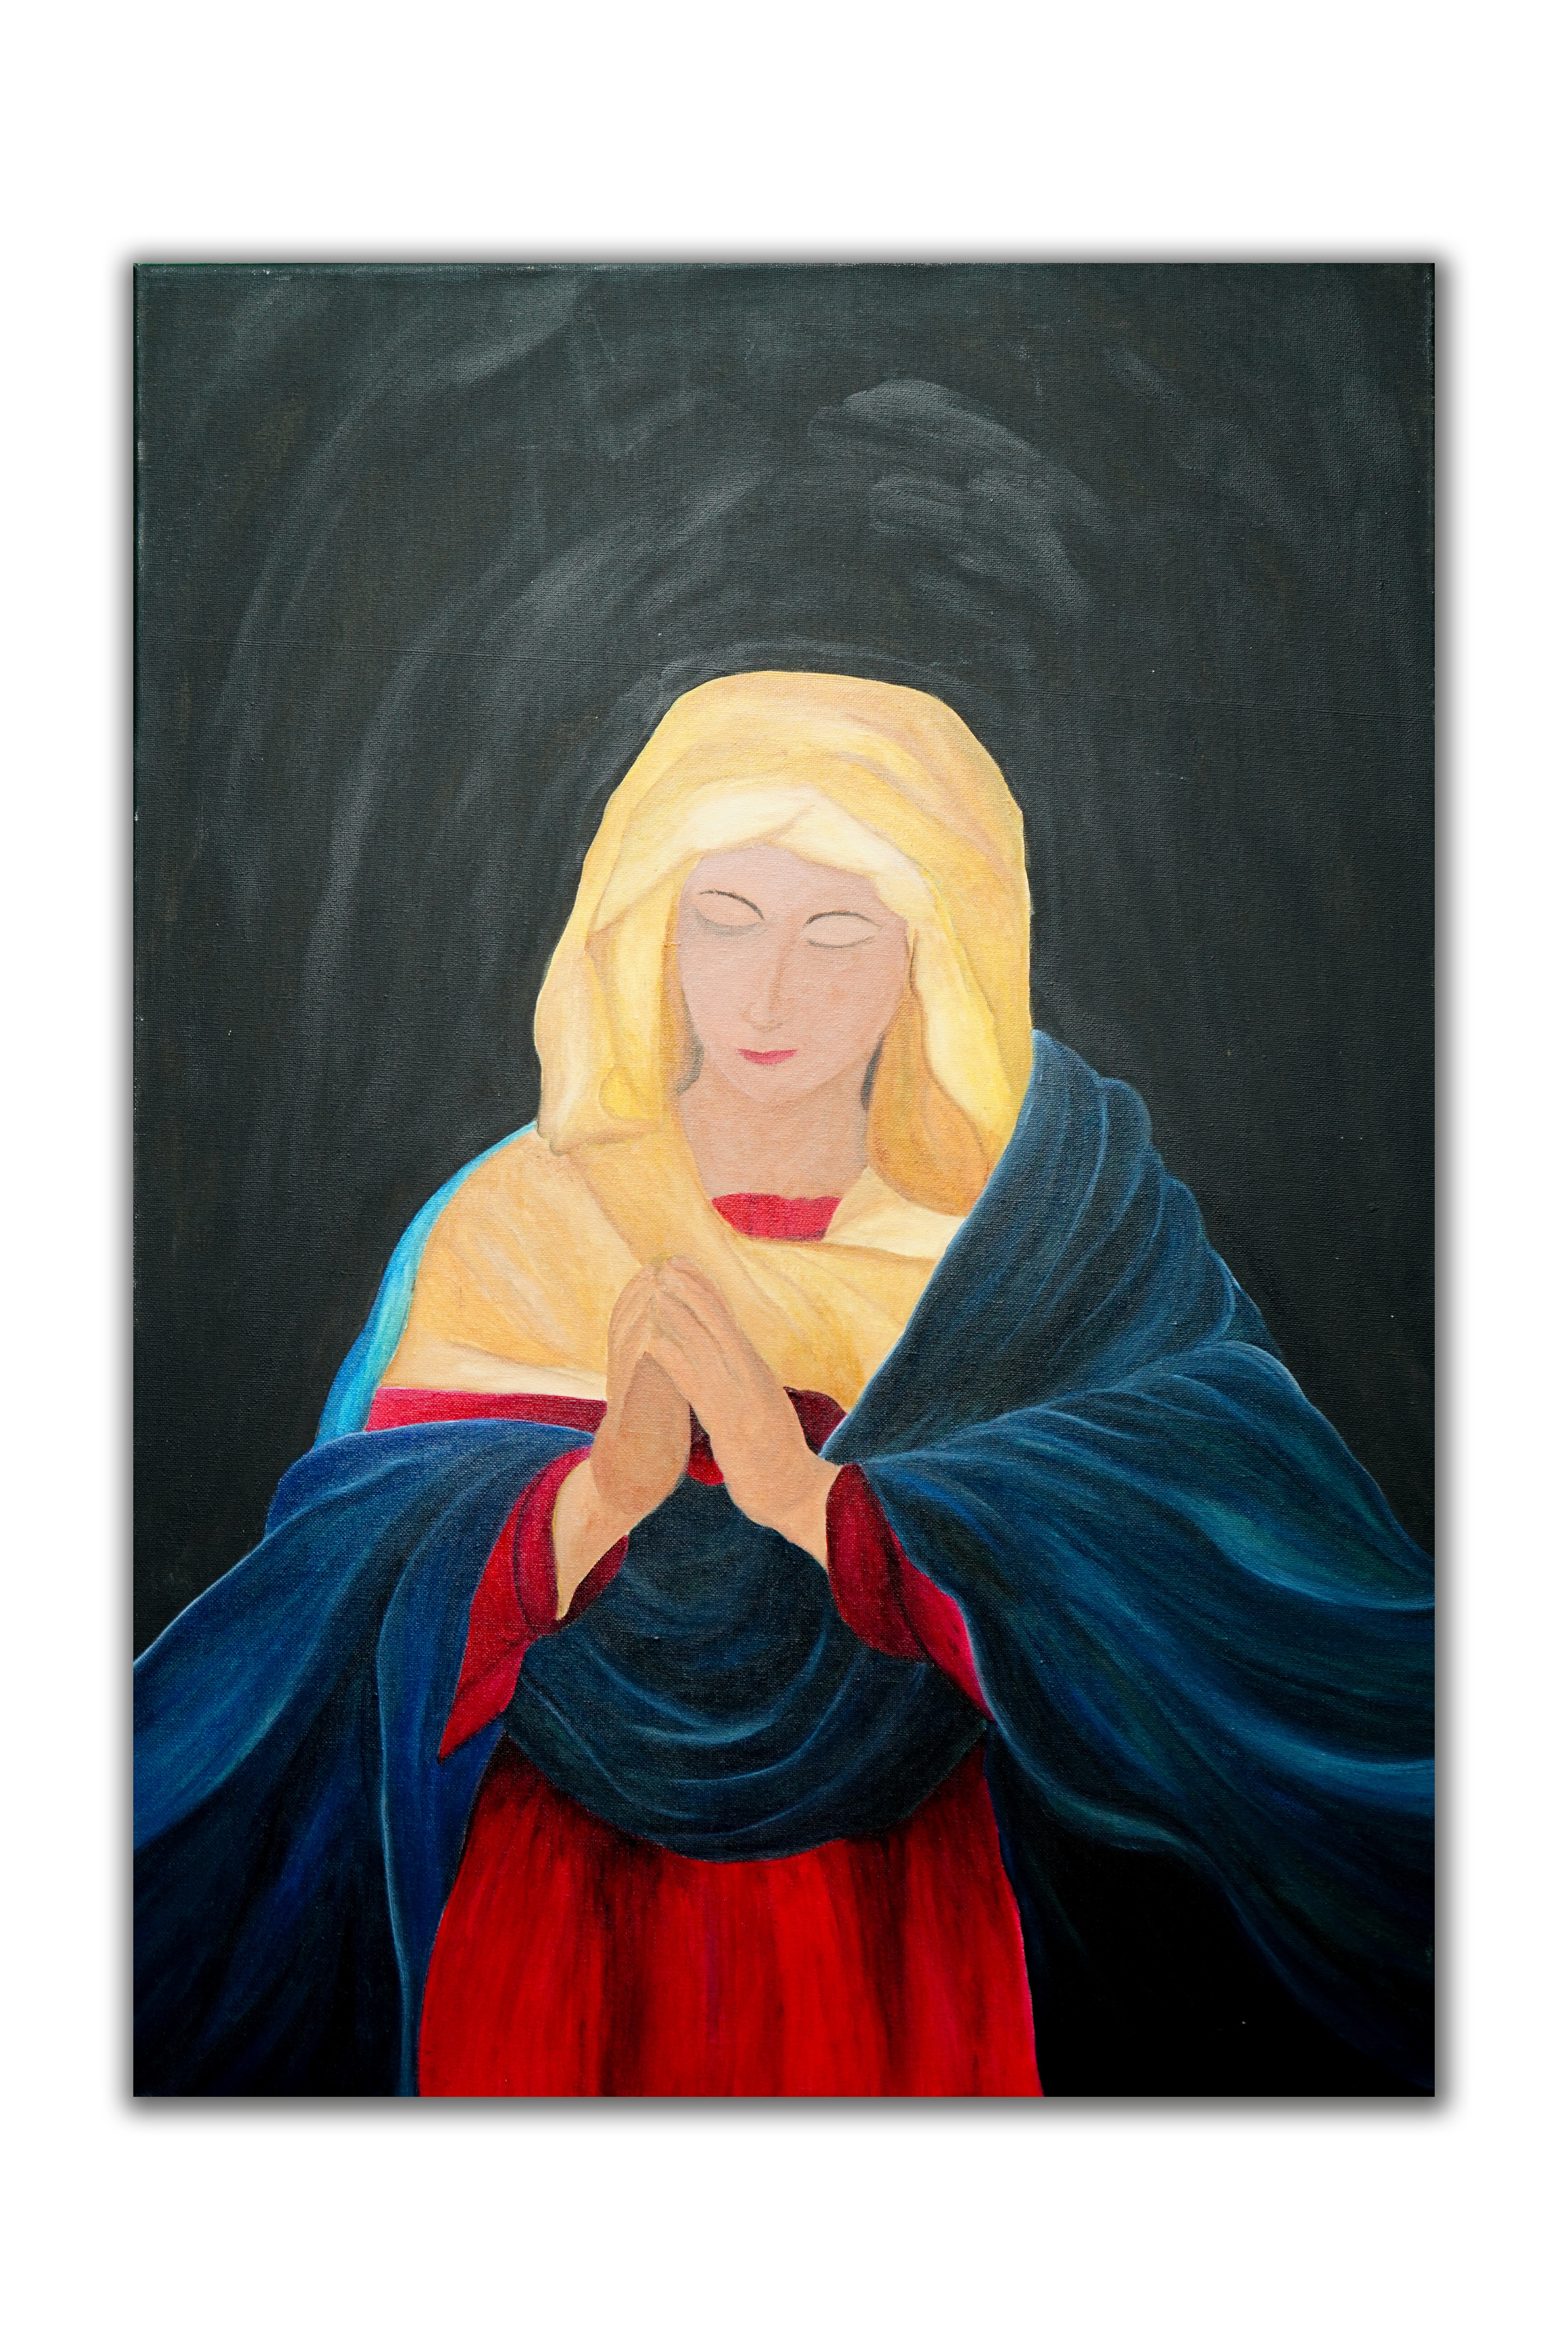 Mother Mary by Nisansala Perera Perera